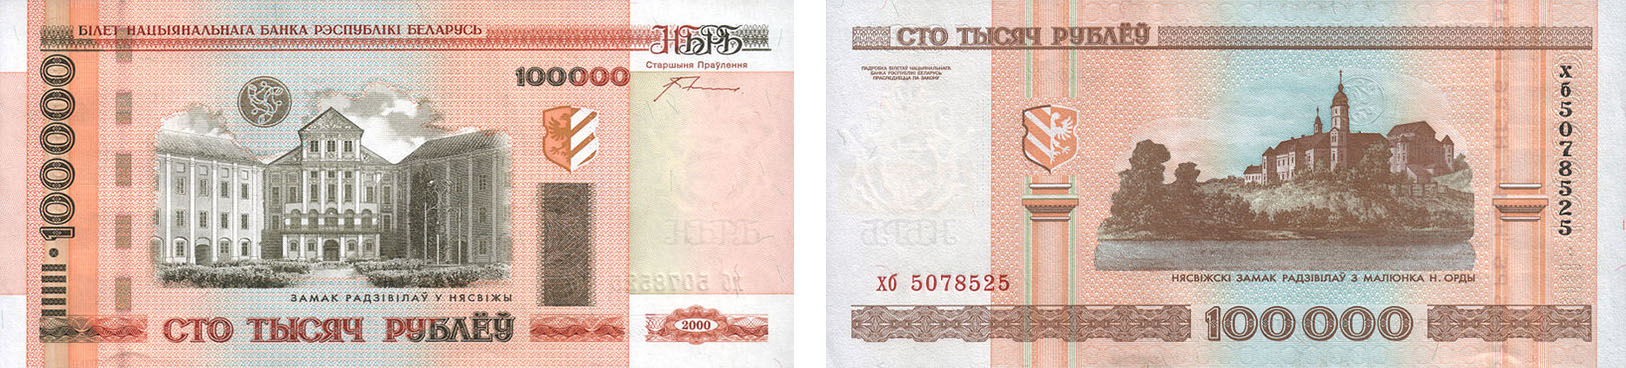 100000 рублей 2000 года